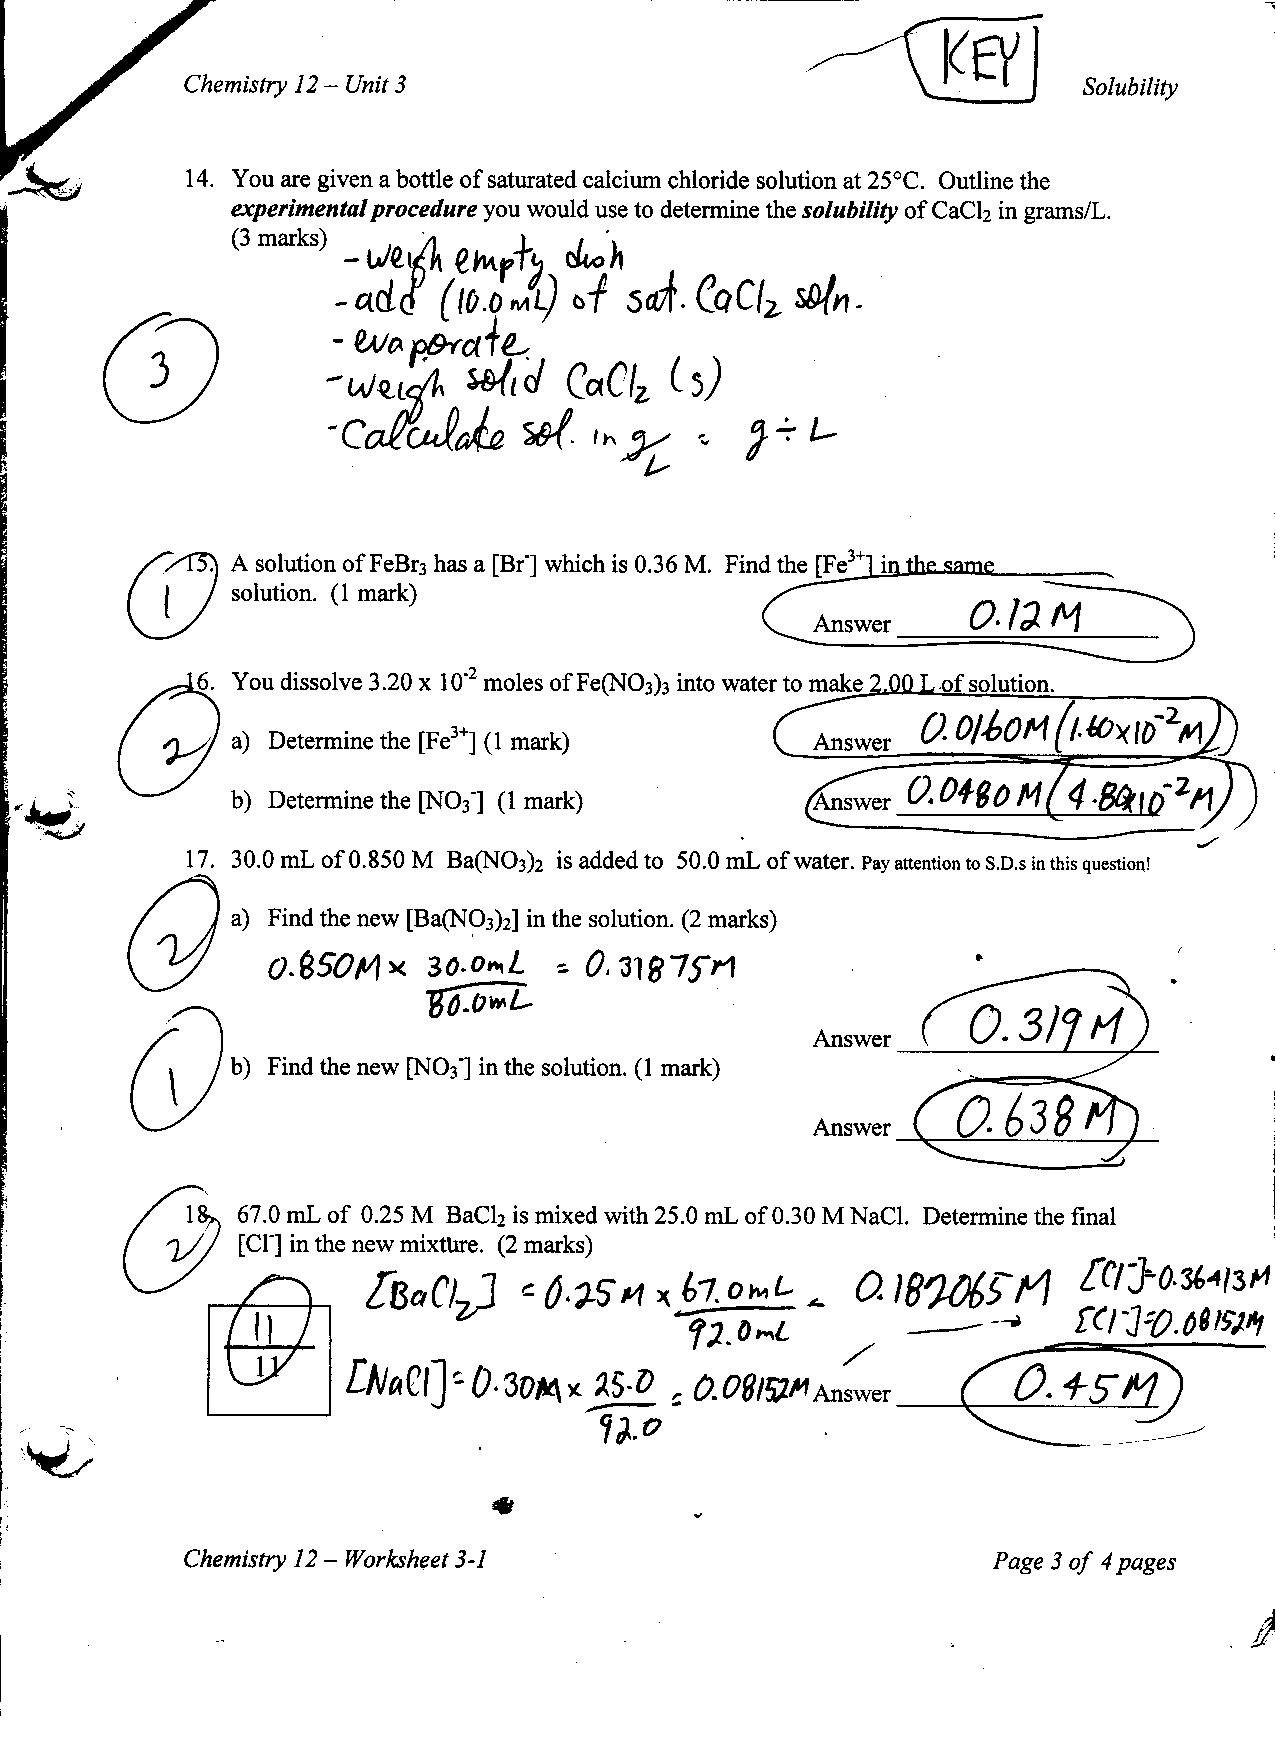 Chemistry 12 Intended For Chemistry Unit 4 Worksheet 1